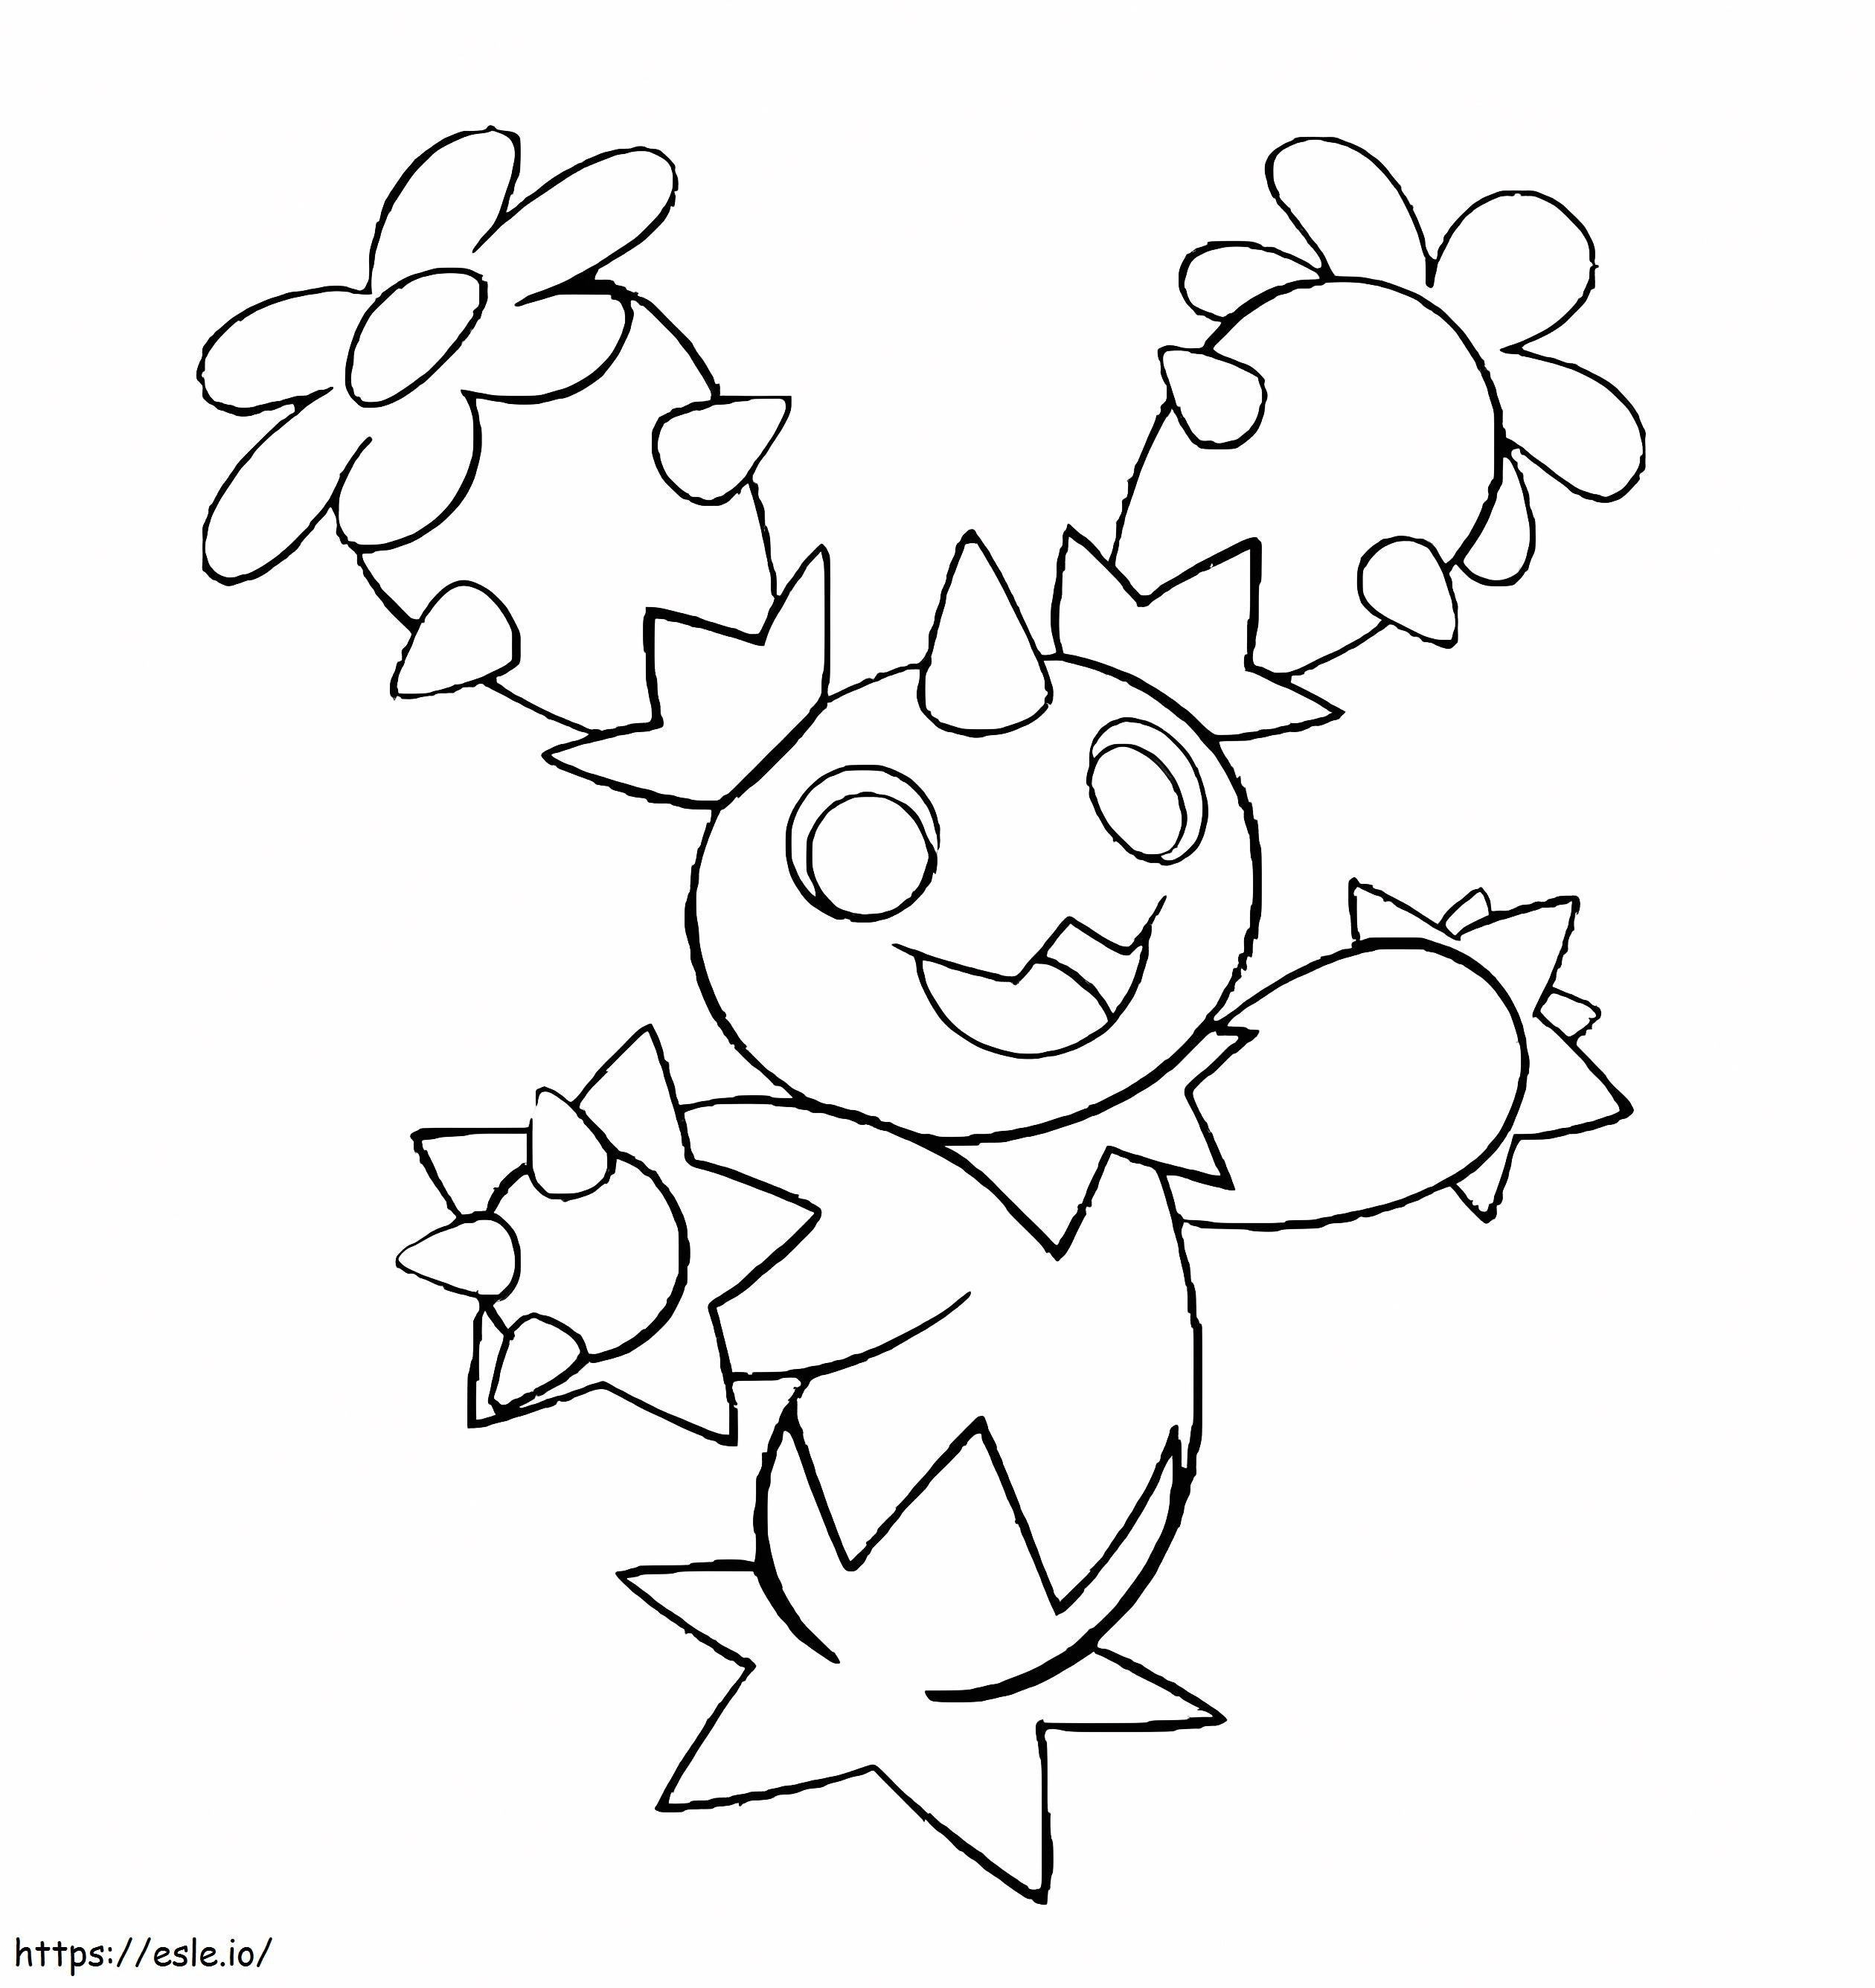 Coloriage Pokémon Maractus Gen 5 à imprimer dessin